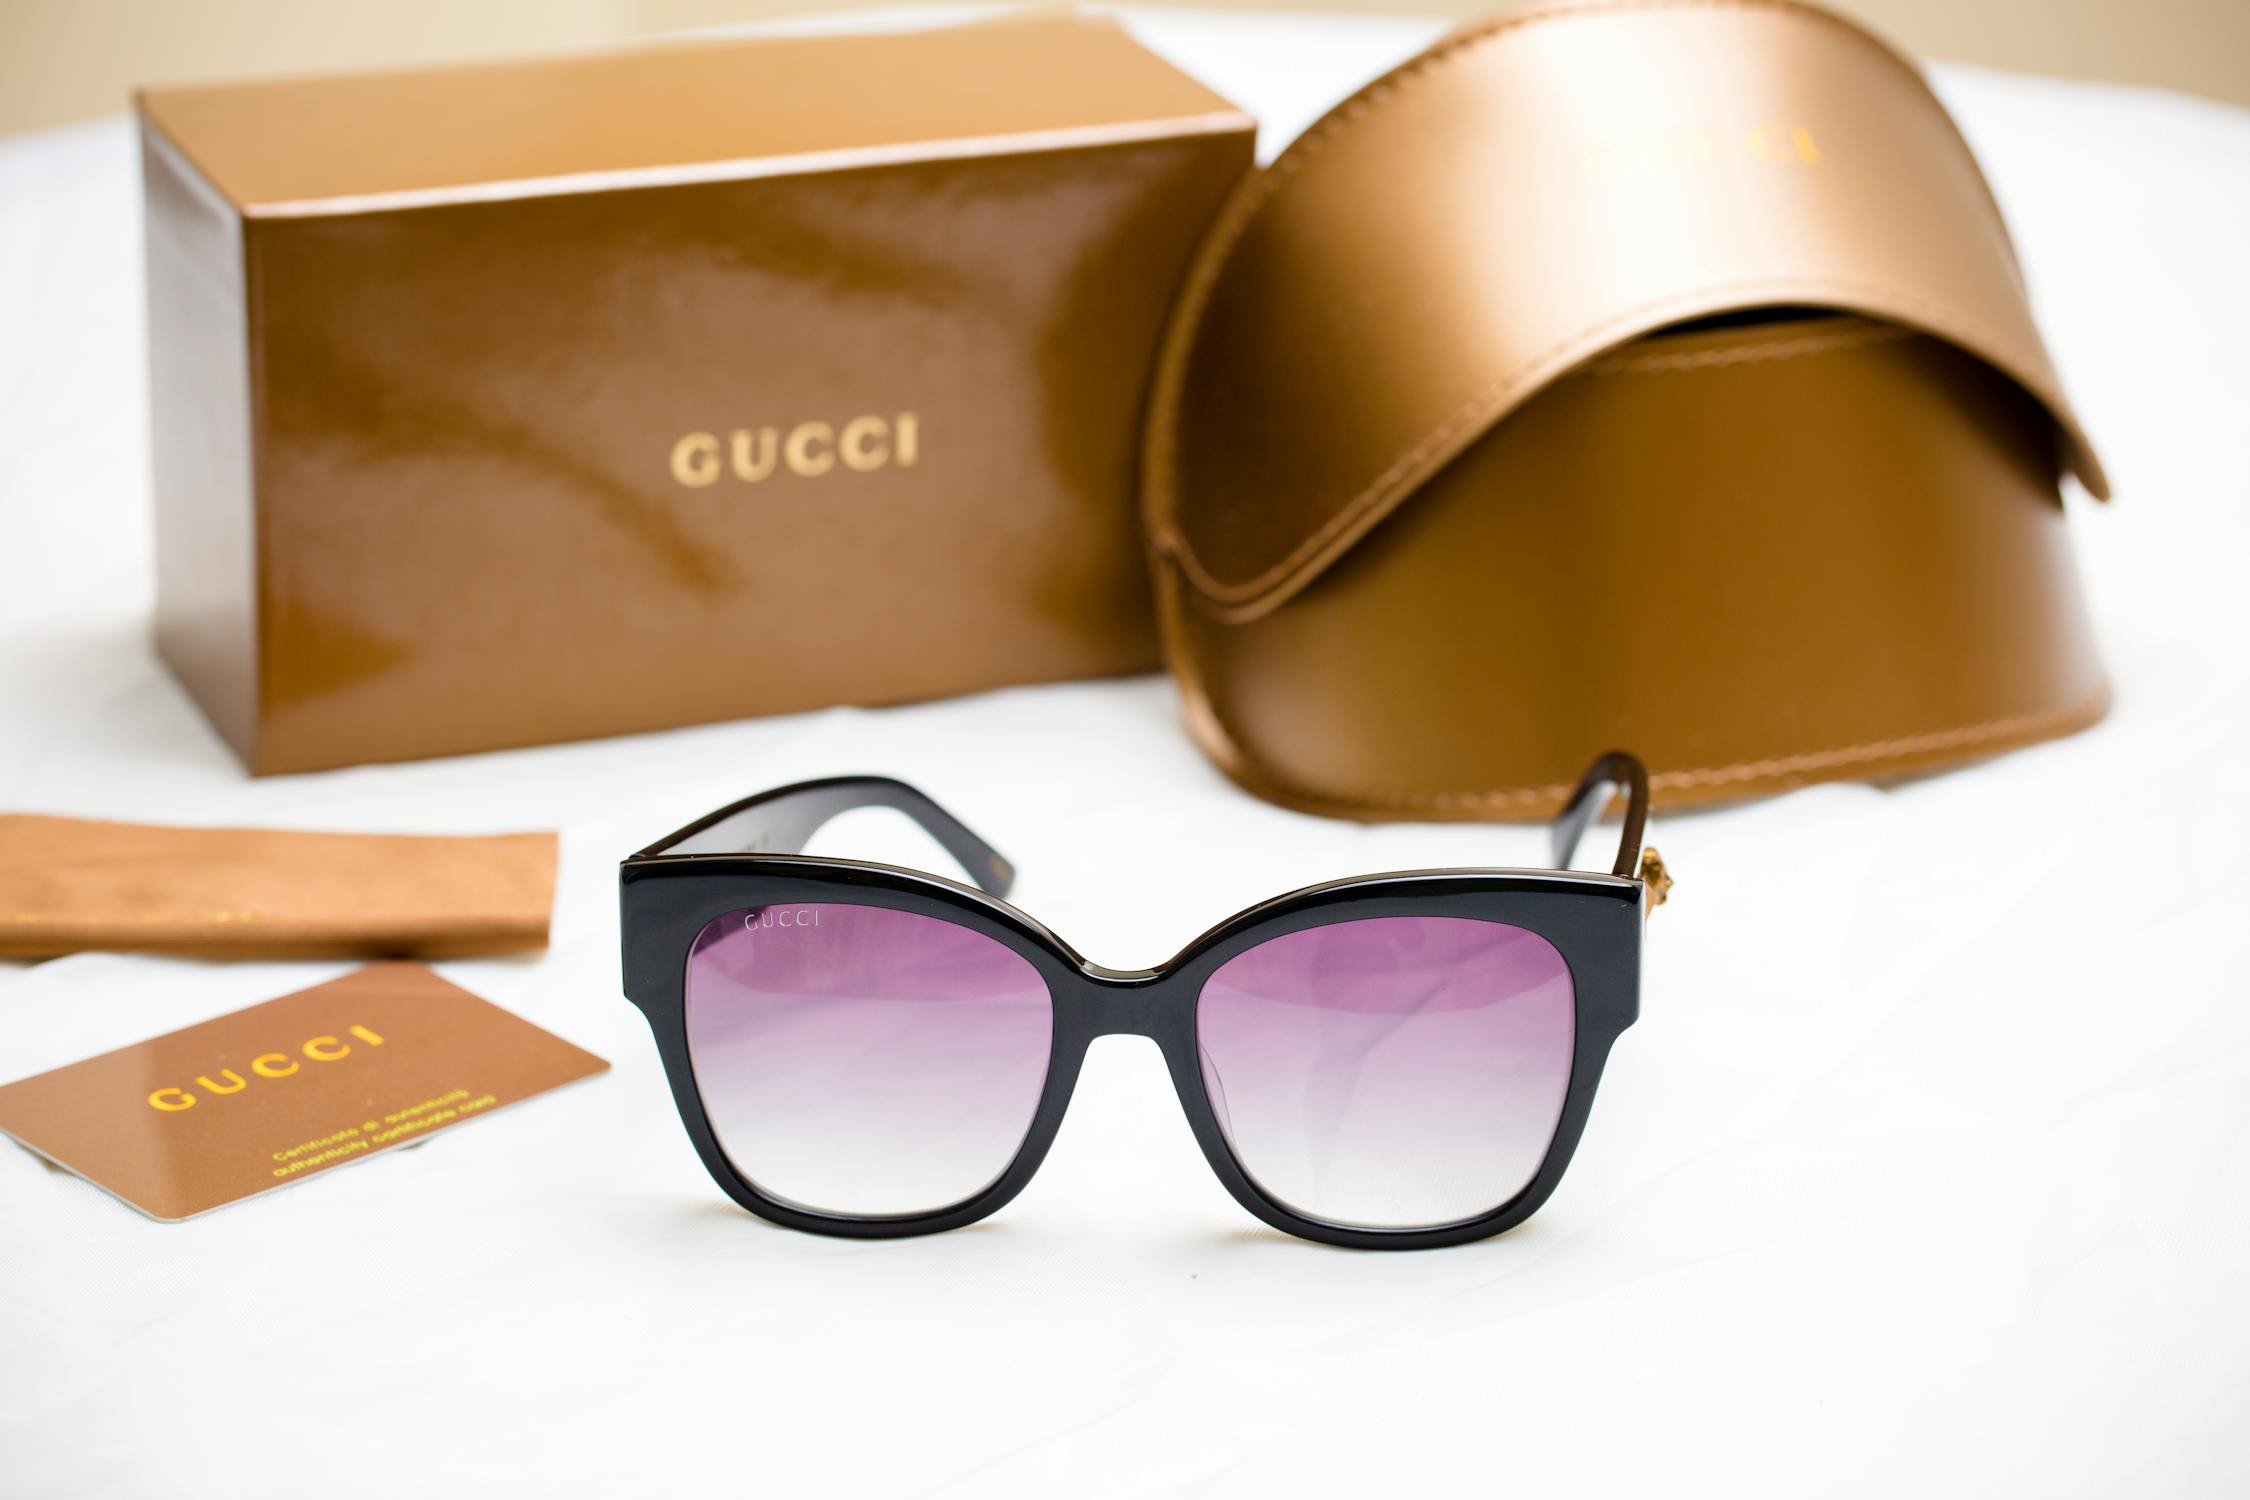 Purple Gucci Sunglasses · Free Stock Photo